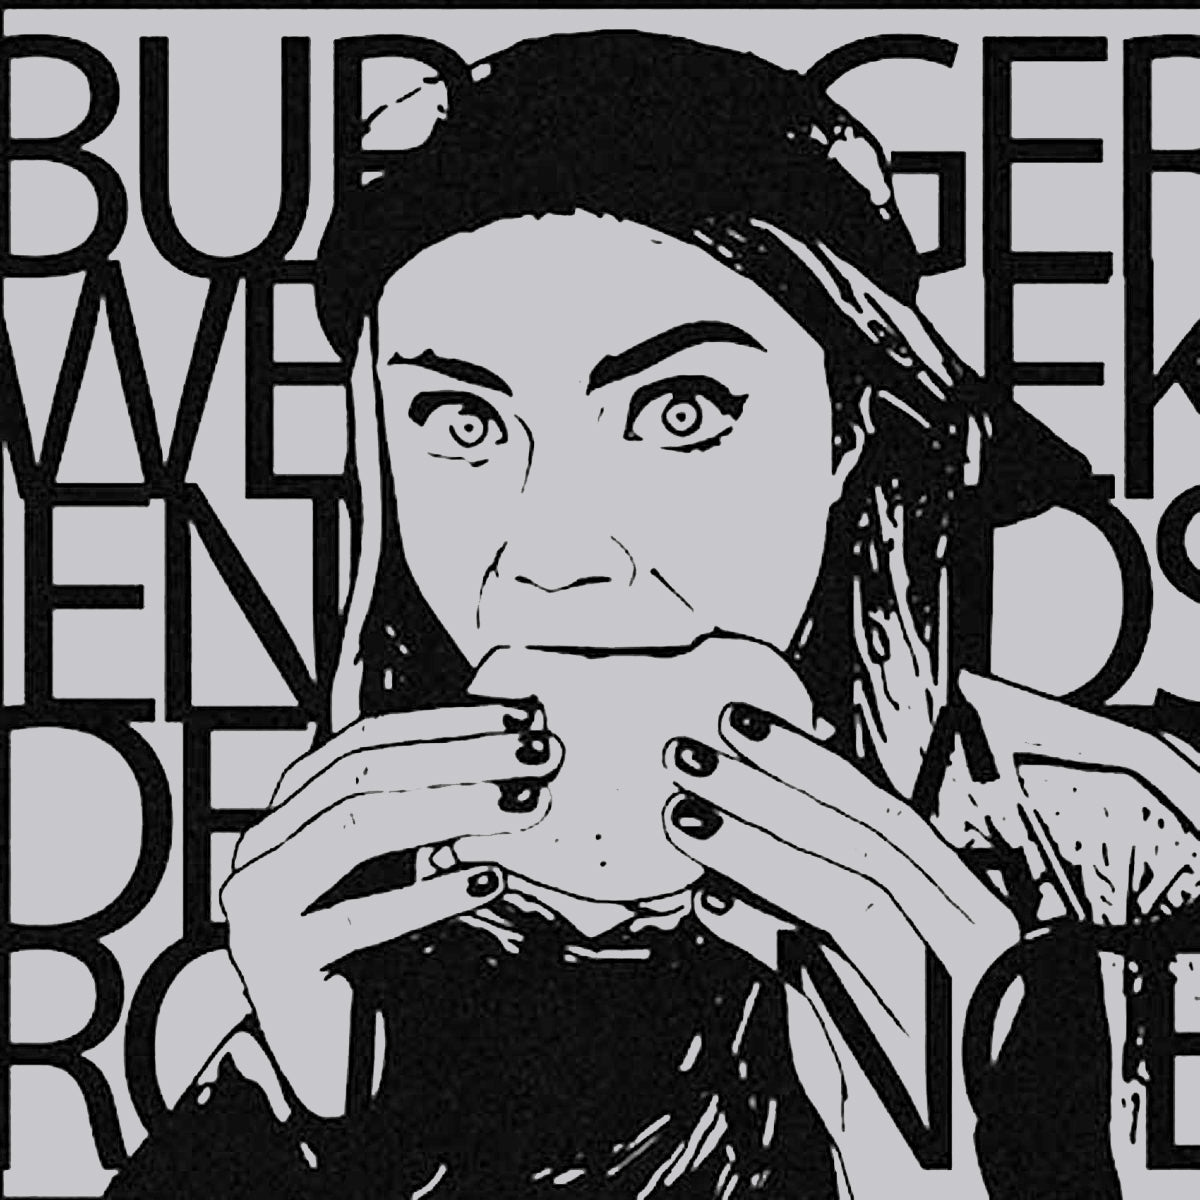 Burger Weekends- Dead Romance 7” ~WANDA RECORDS!